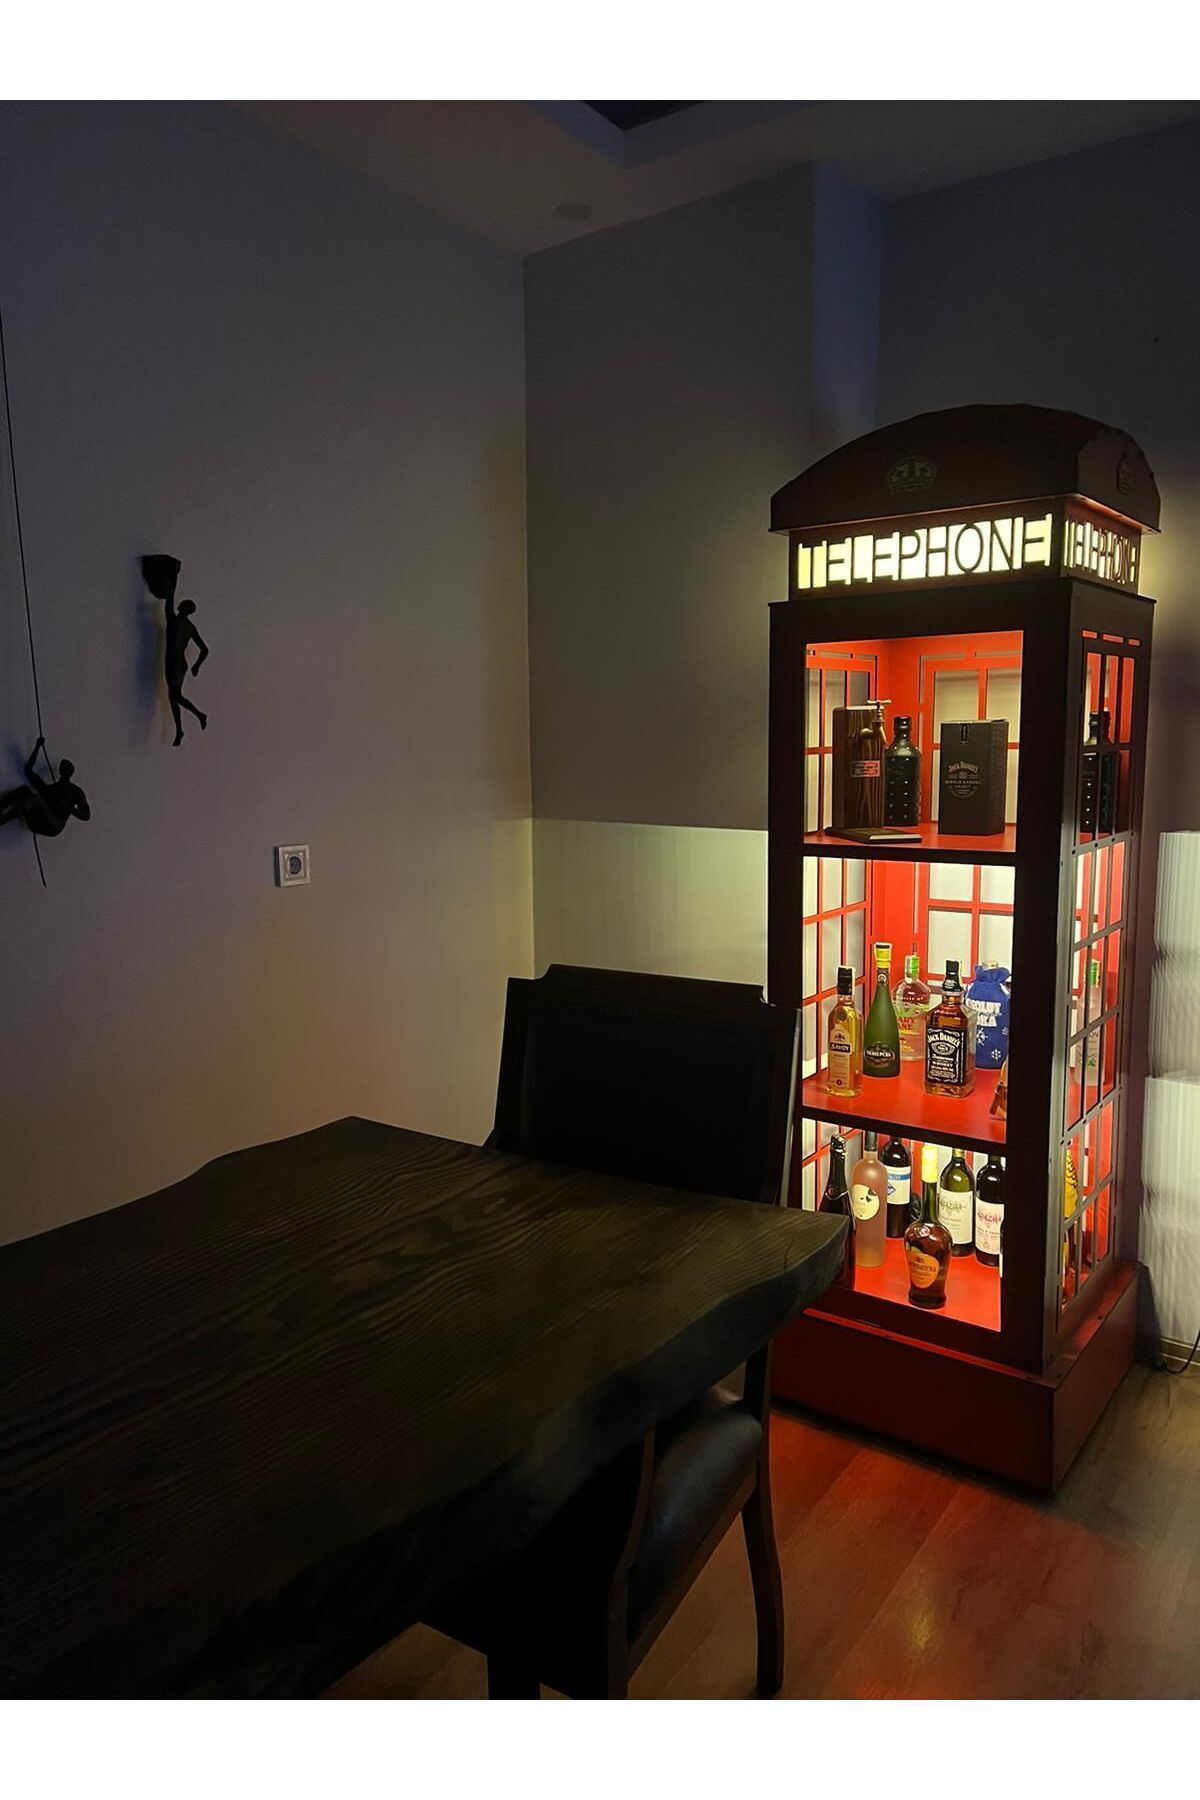 Fantasy Decorative İngiltere Telefon Kulübesi Kitaplık // Kişiye Özel Ayarlanabilir Kitaplık